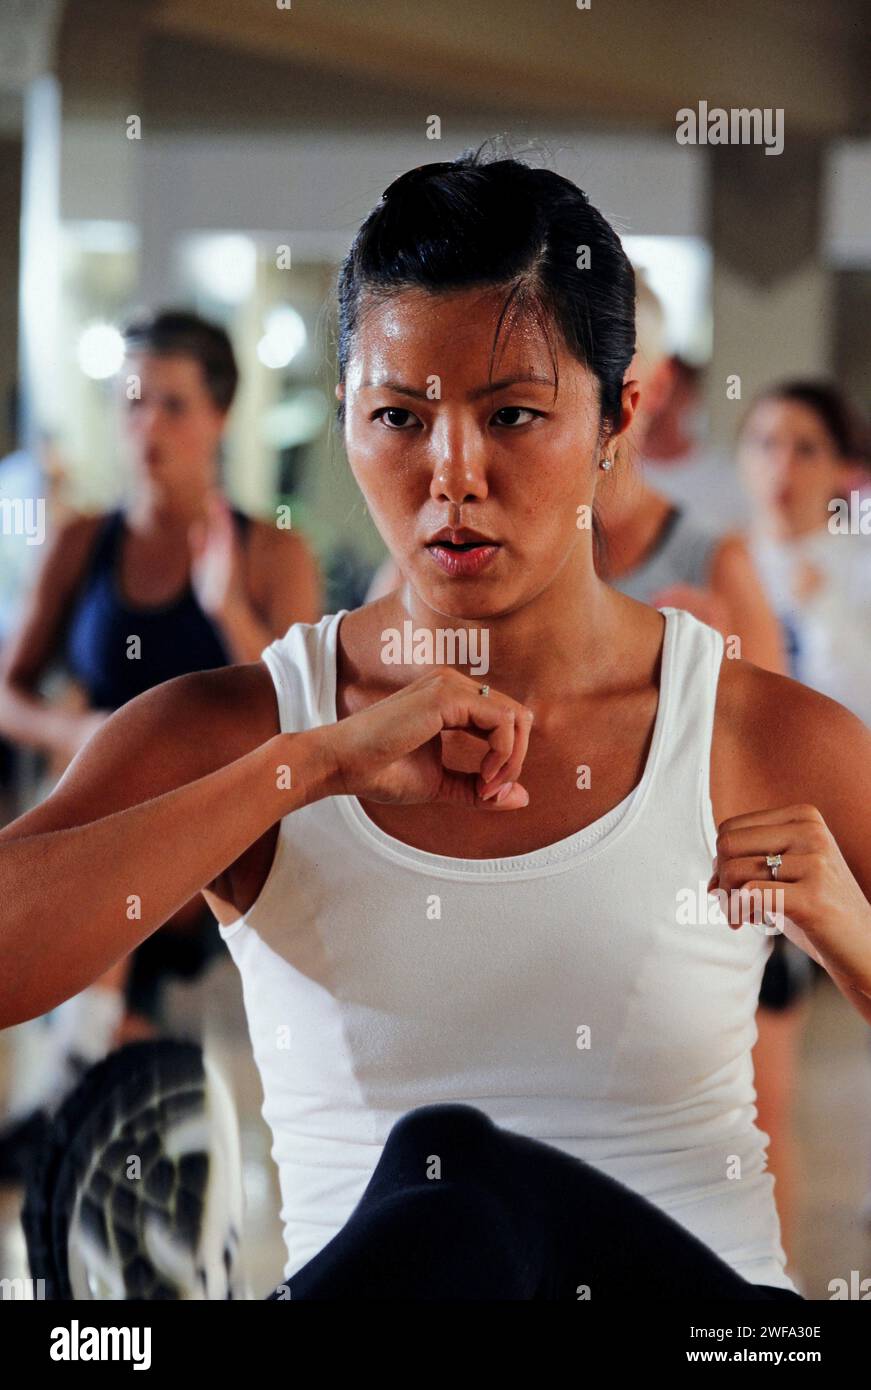 Eine entschlossene Frau wird in einer Notwehr-Haltung während eines Kampfsporttrainings in einem Fitnessstudio mit anderen Teilnehmern im Hintergrund dargestellt. Stockfoto